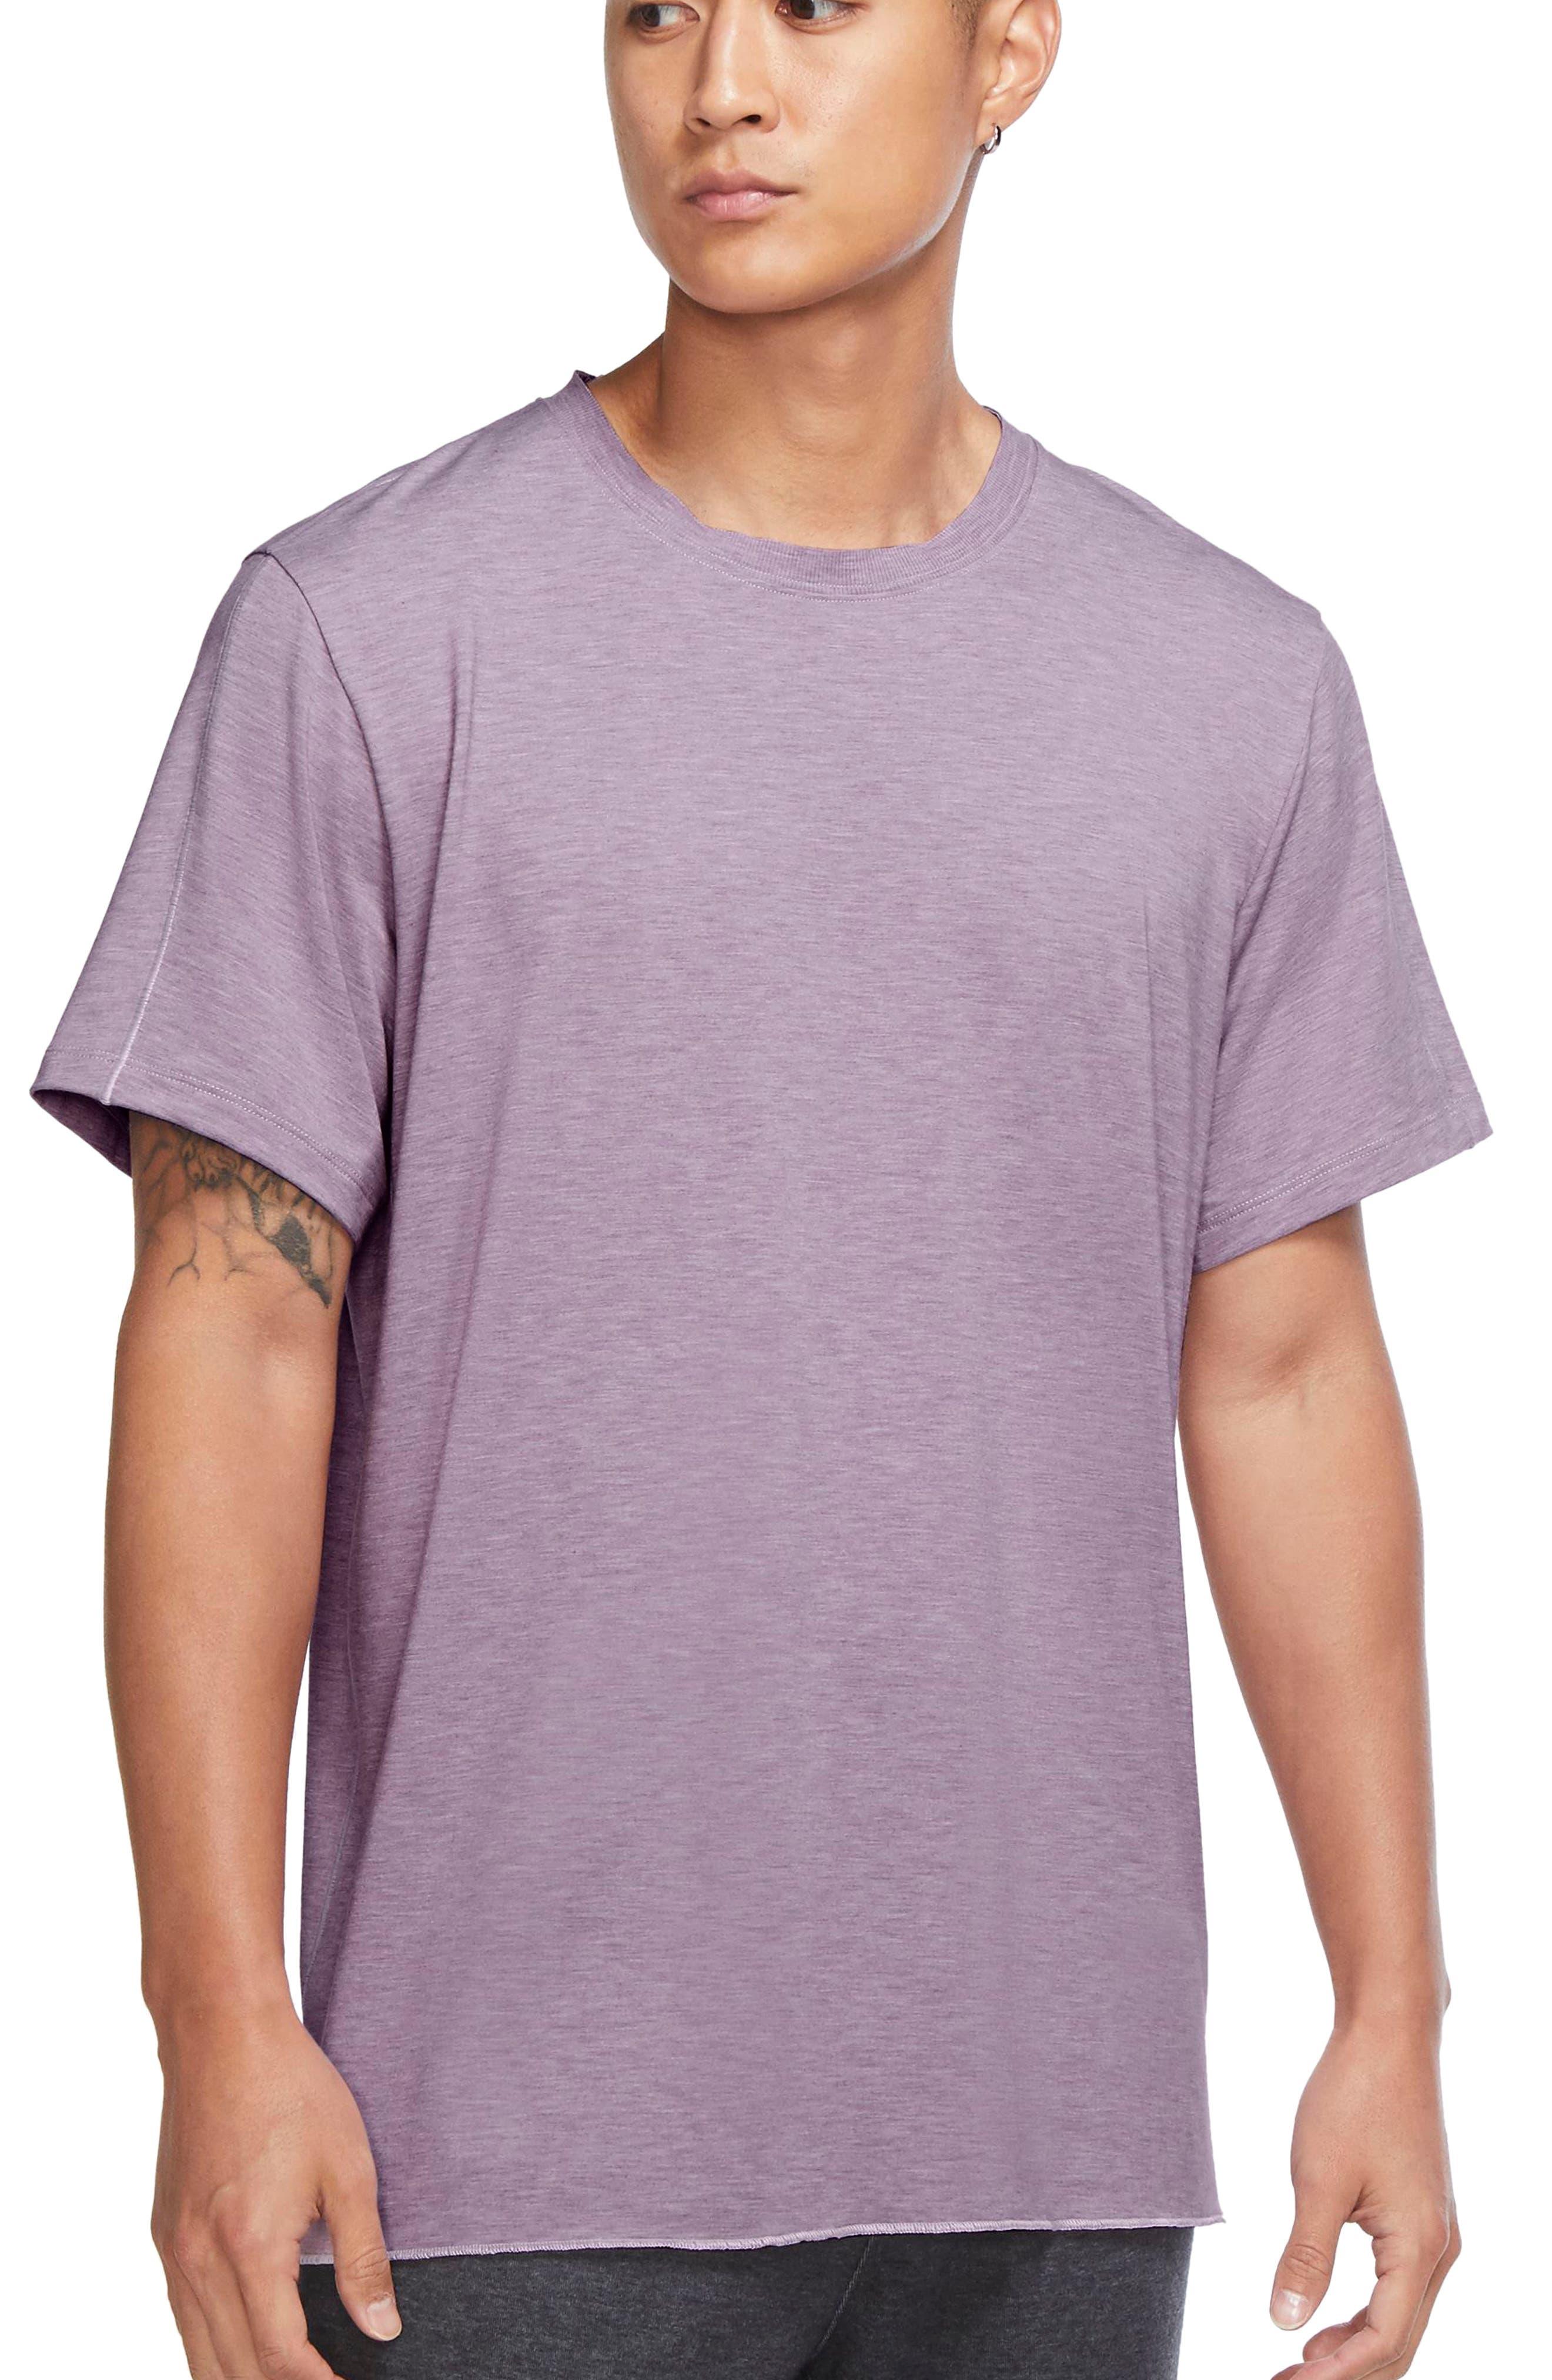 https://cdna.lystit.com/photos/nordstrom/b92274c5/nike-Doll-Amethyst-Wave-Grey-Fog-Dri-fit-Yoga-T-shirt.jpeg